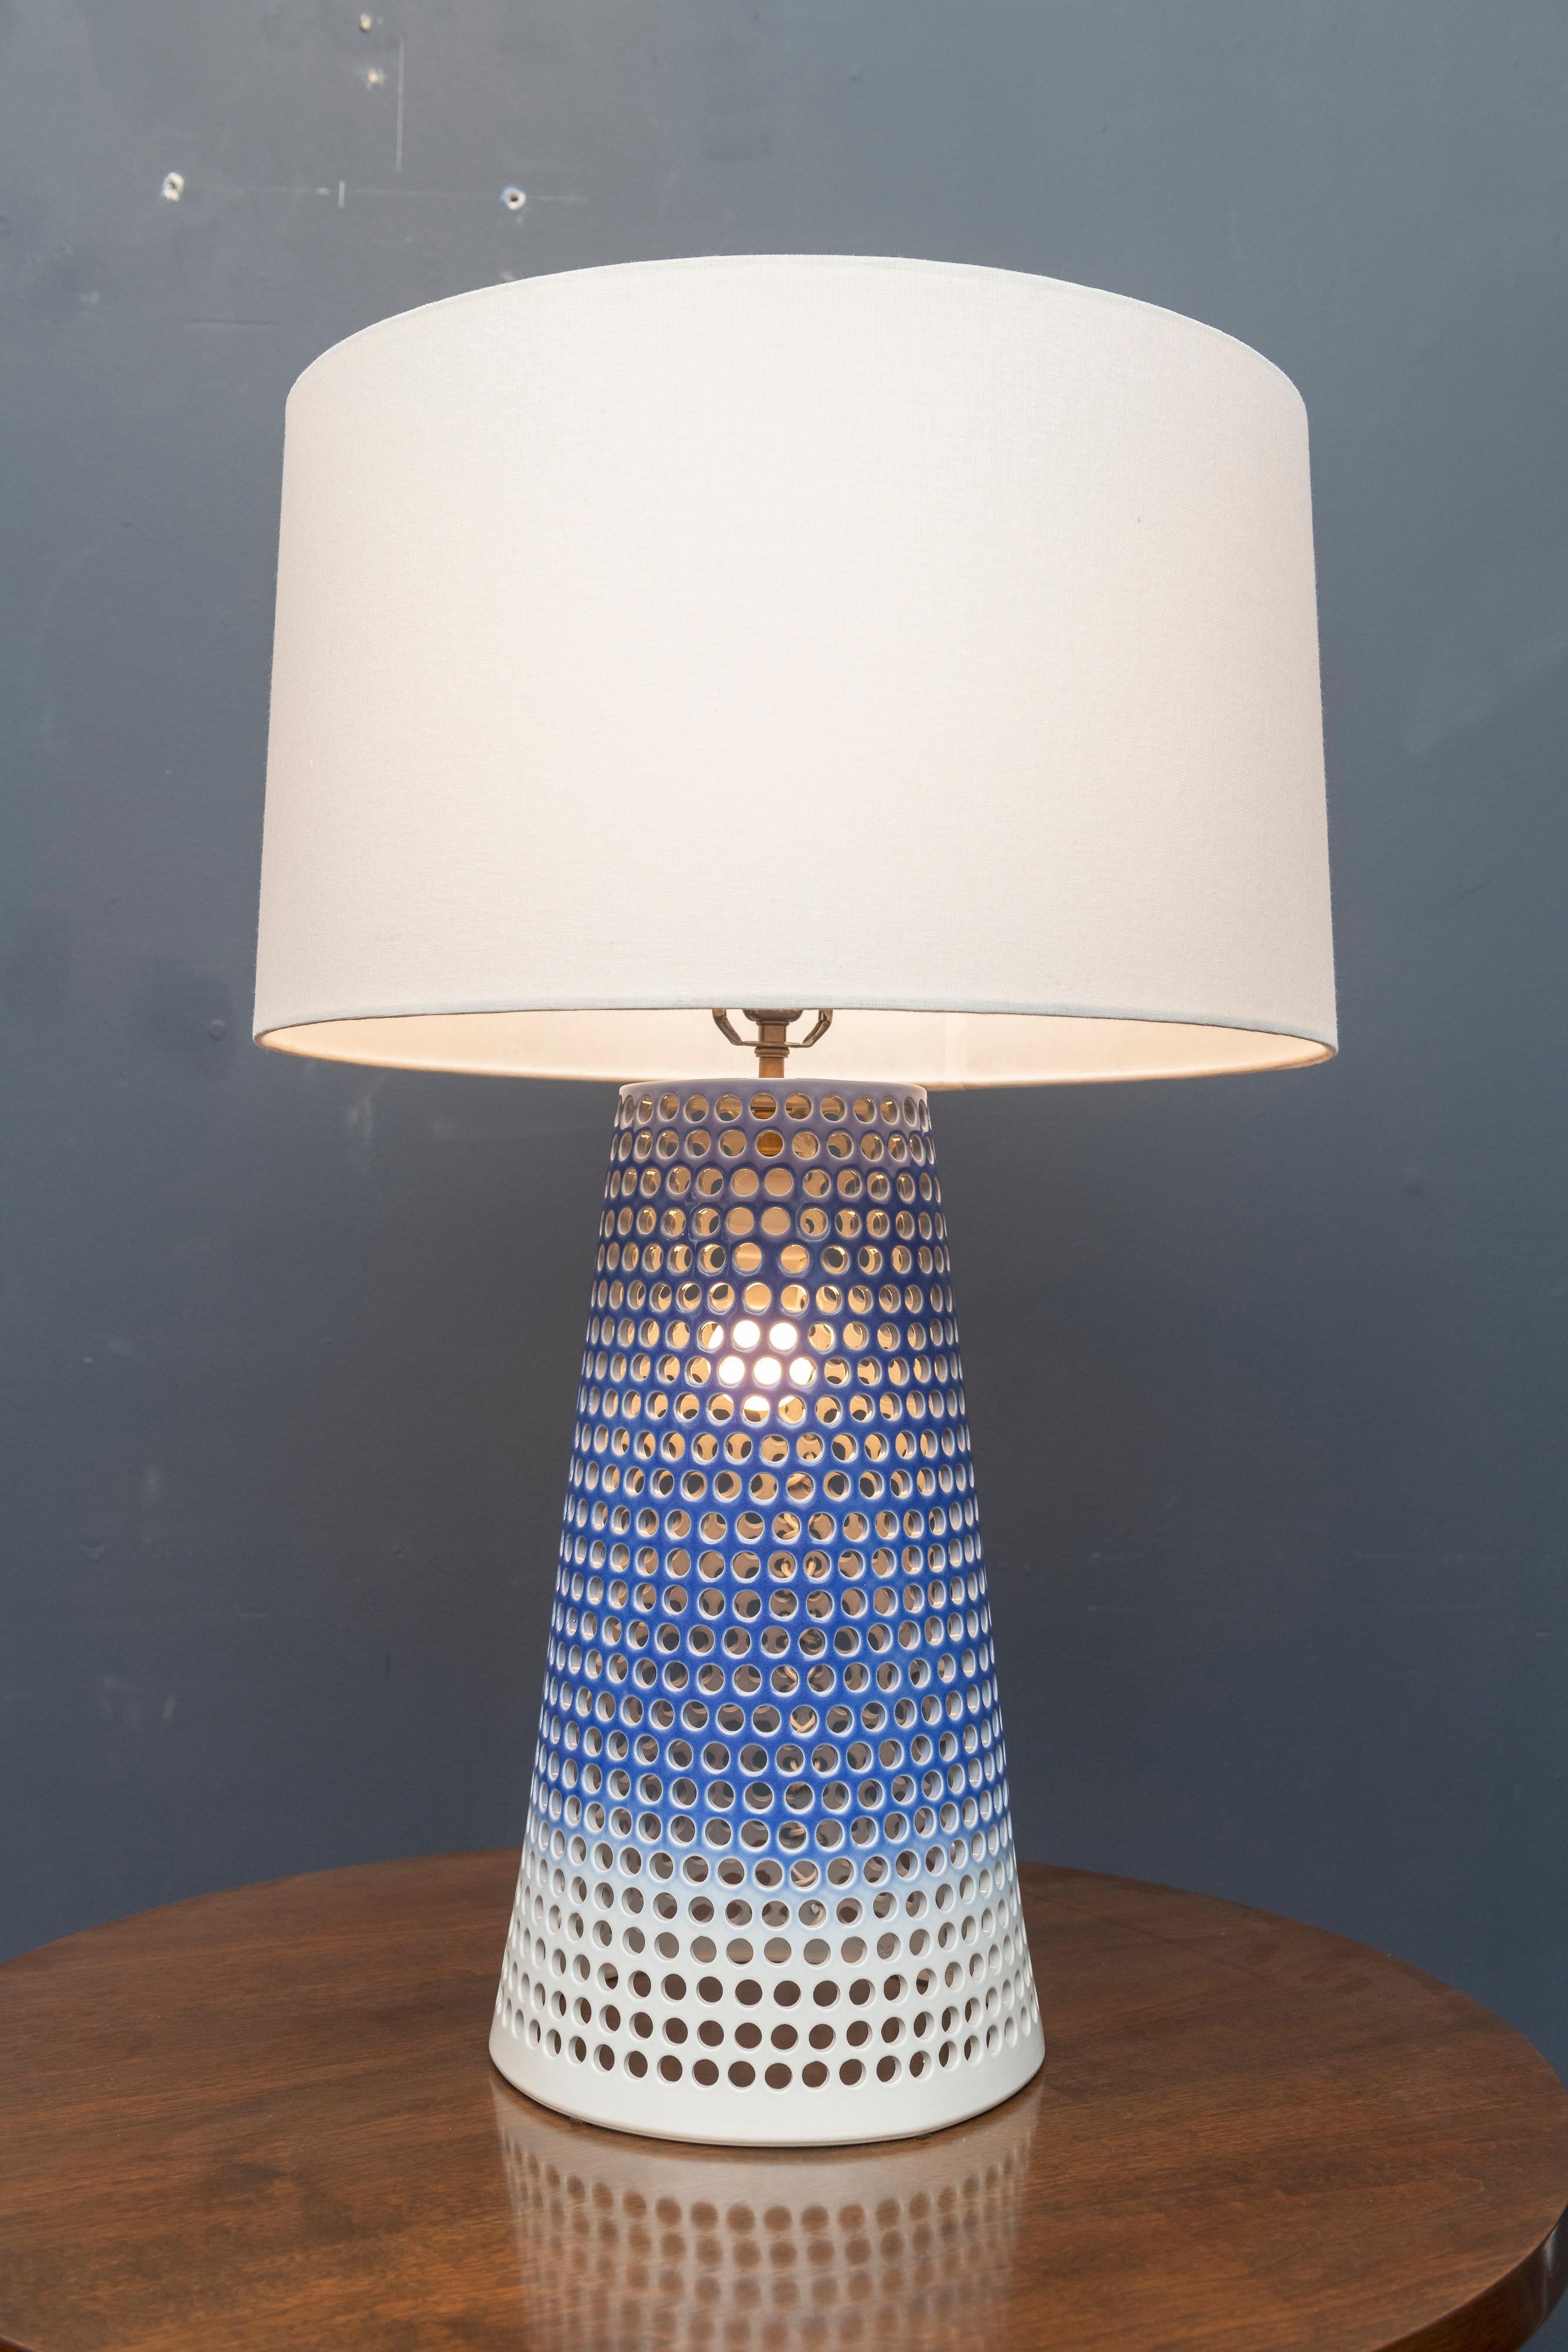 Elegante große Keramiklampe, entworfen von Ryan Mennealy 2012, signiert. Doppelsteckdosen, die zusammen gedreht oder separat beleuchtet werden können.